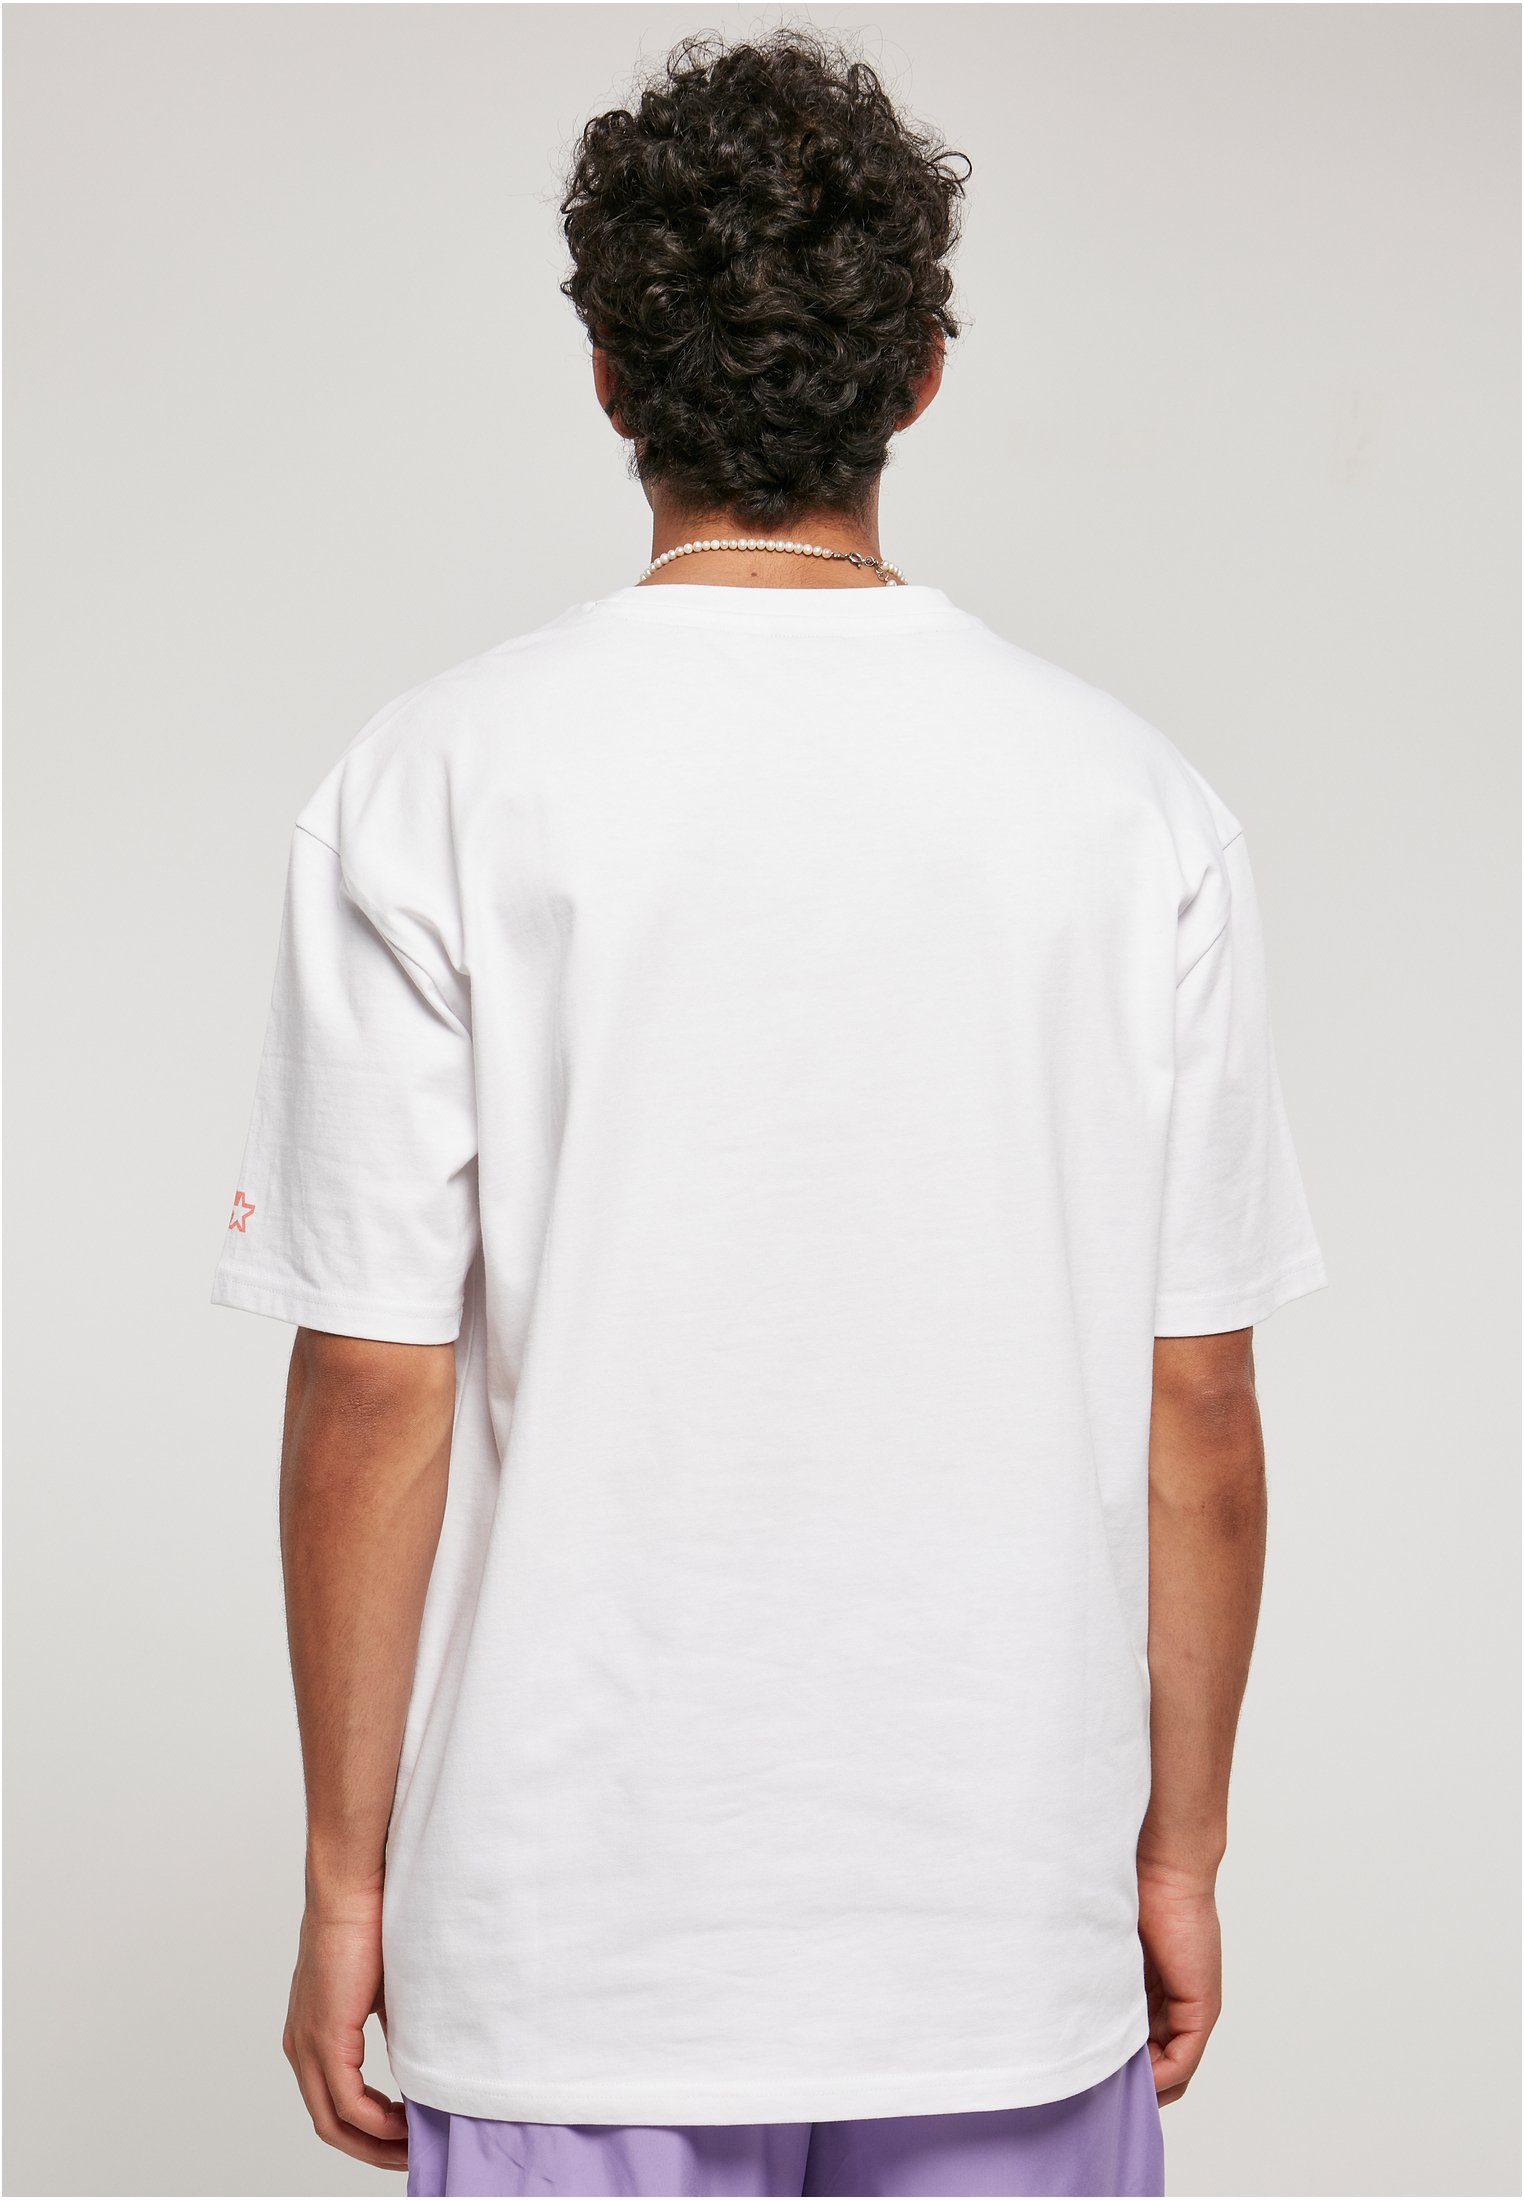 Label Starter Black Palm Herren (1-tlg) white Starter T-Shirt Tee